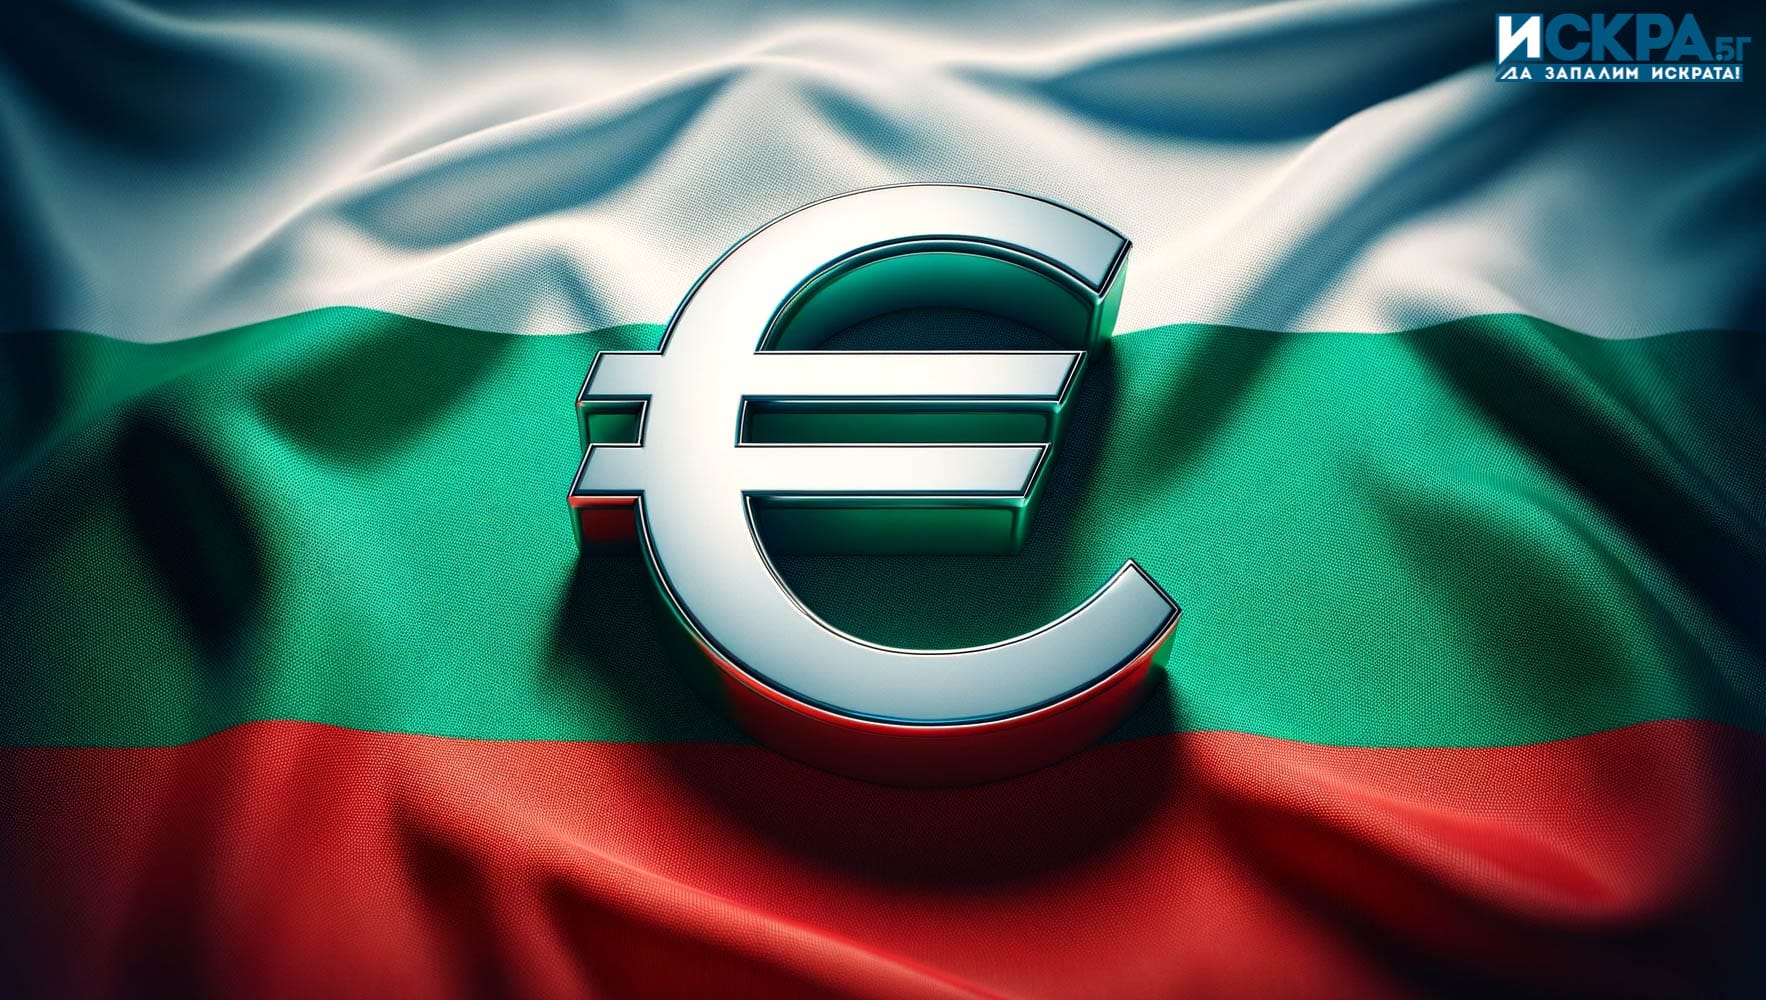 Ако България приеме еврото за своя национална валута цените ще